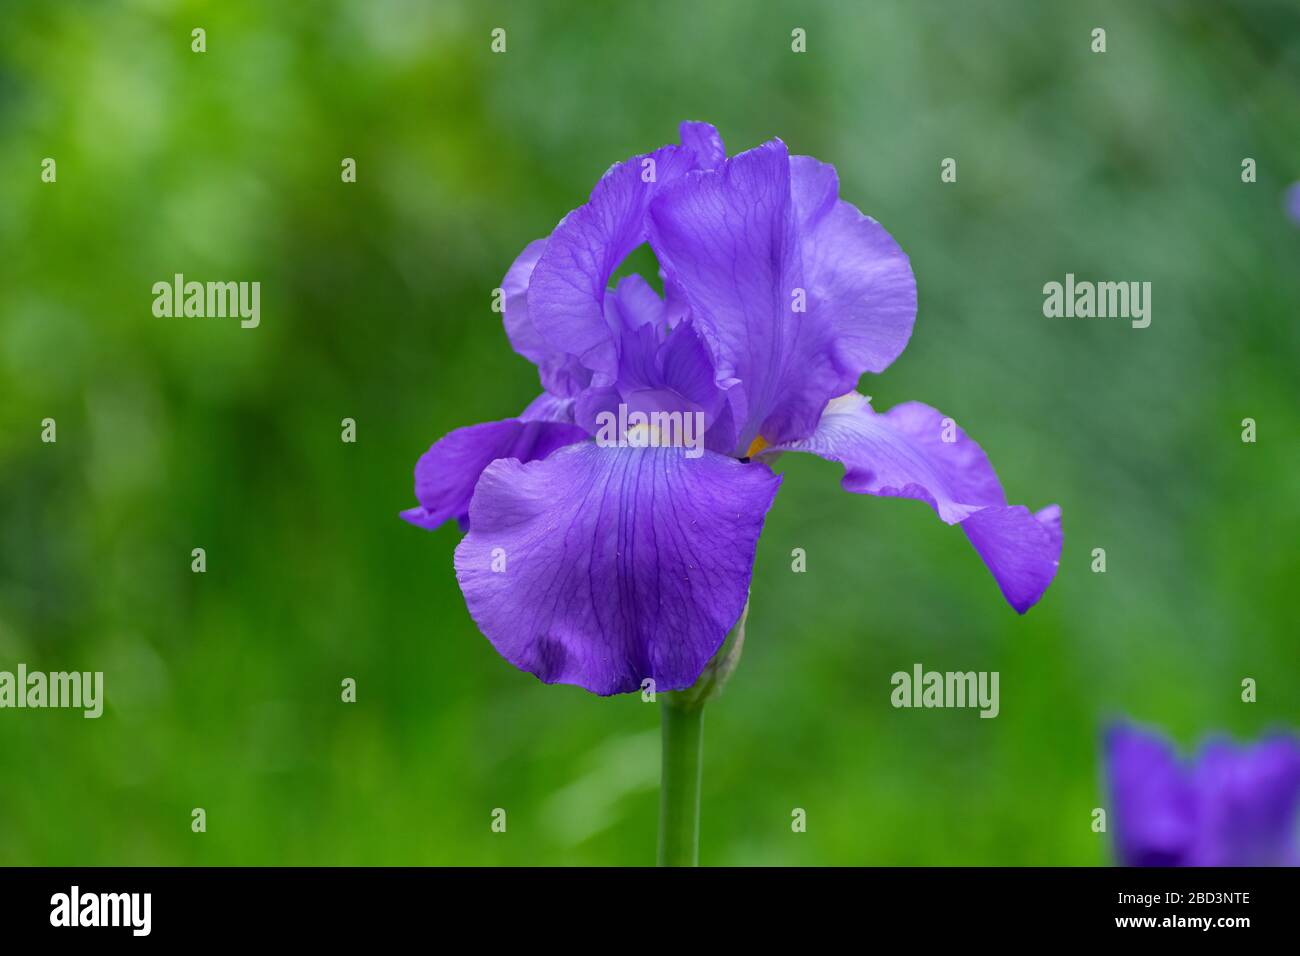 Primo piano di un bellissimo e delicato fiore di iride viola in piena fioritura in un giardino con un colore verde sfumato e vivace contrastante nel backgroun Foto Stock